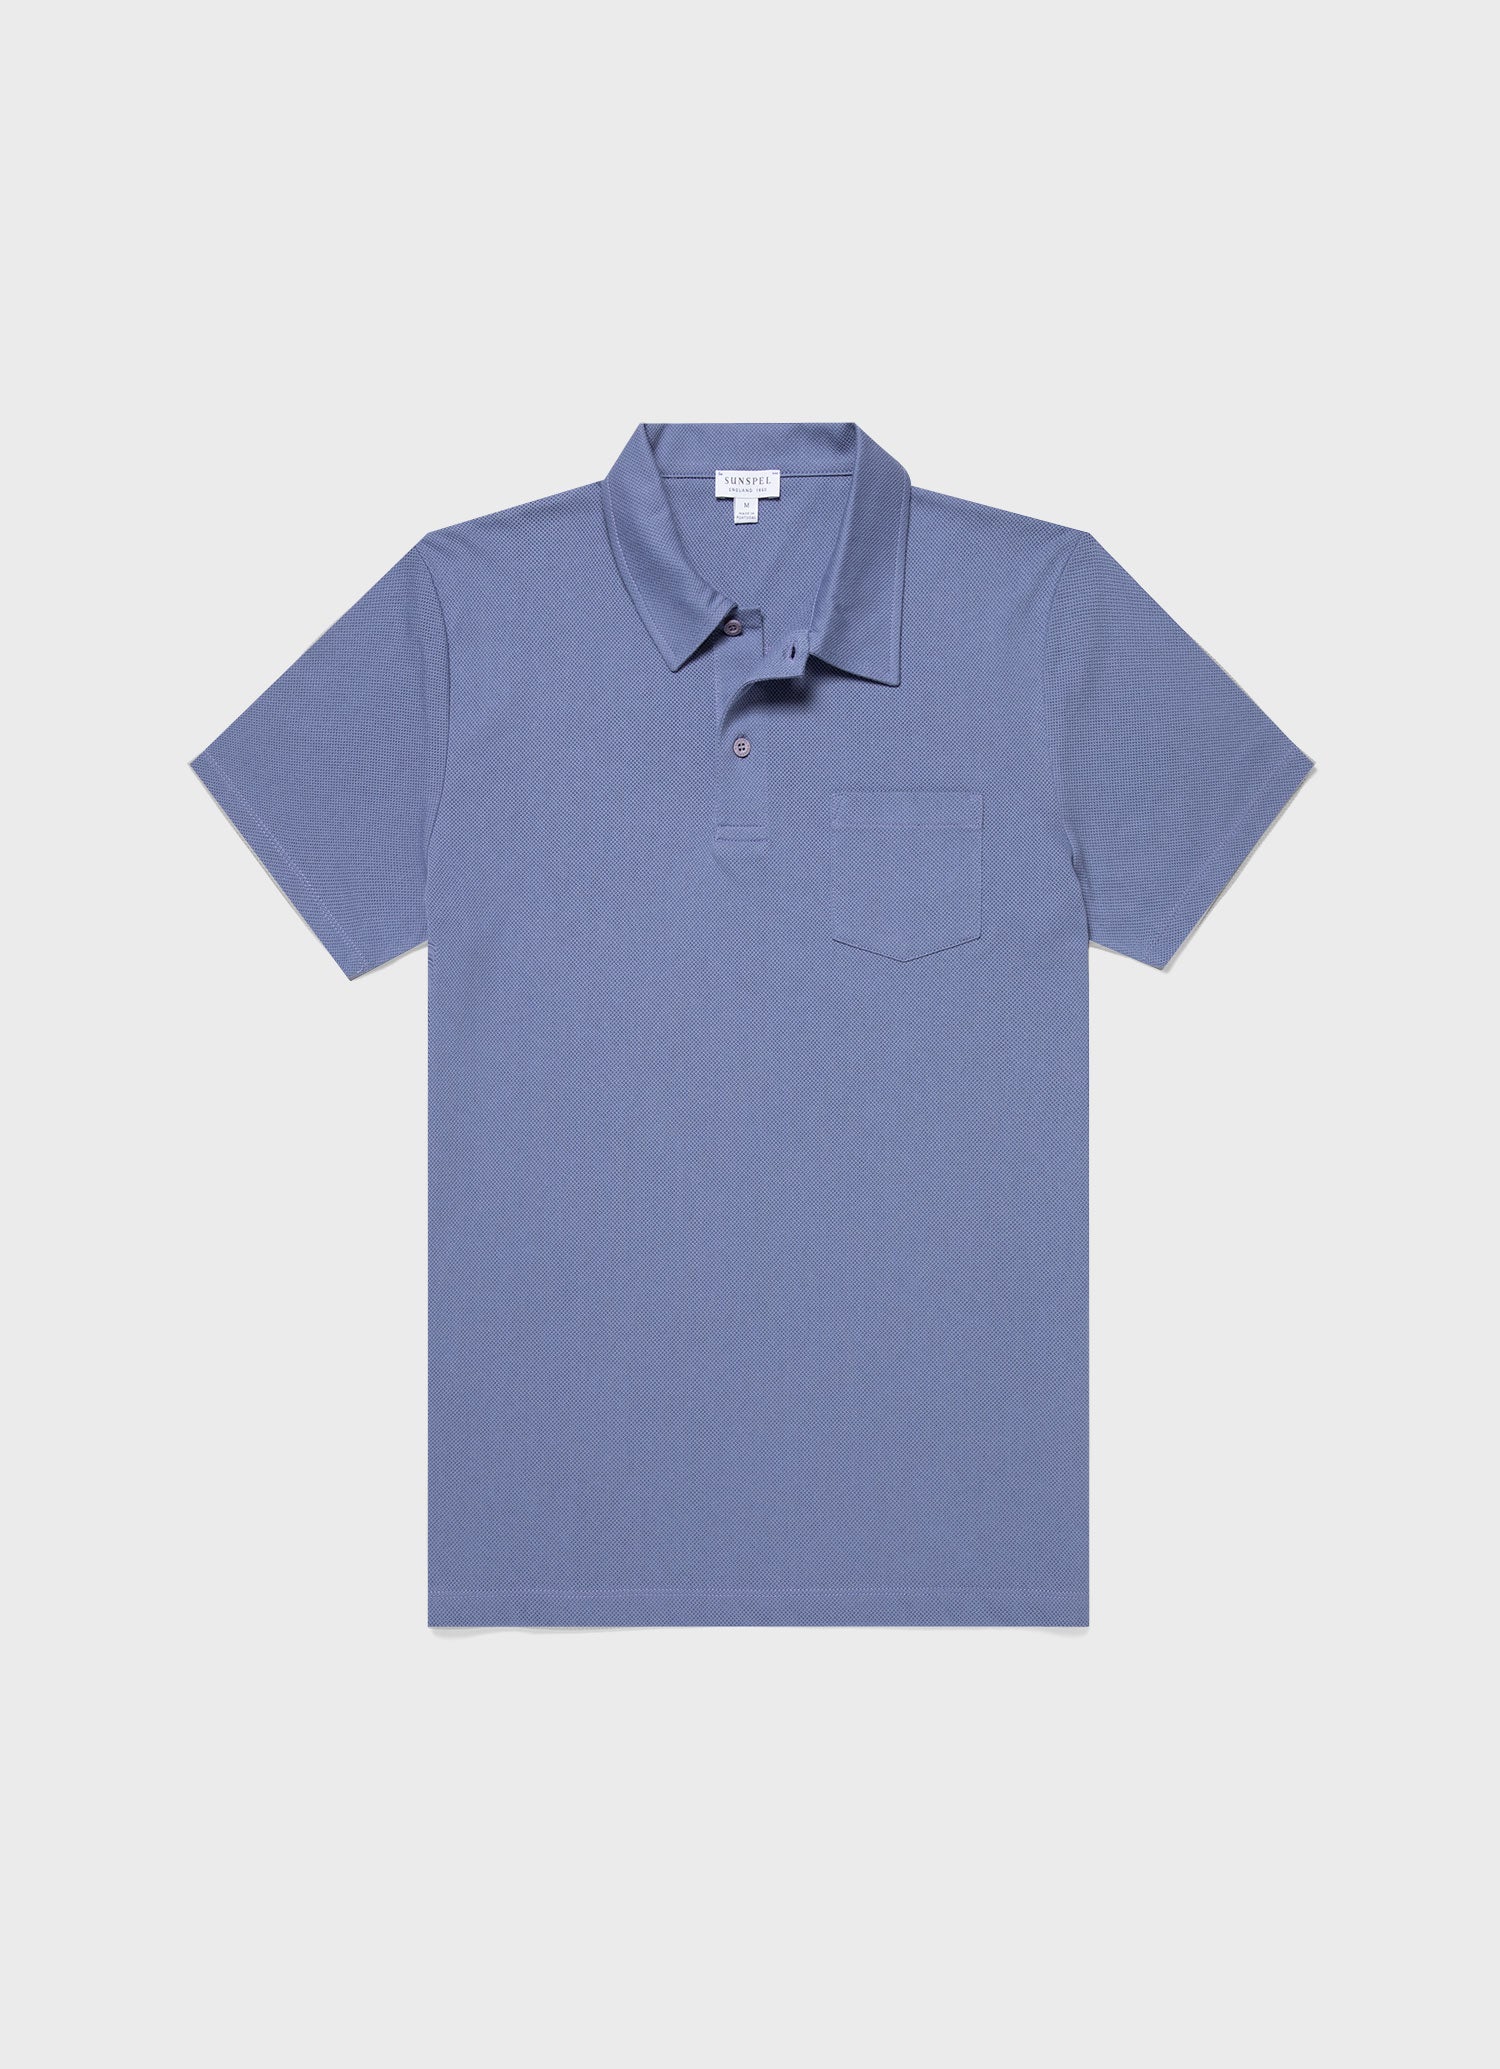 Men's Riviera Polo Shirt in Grape | Sunspel